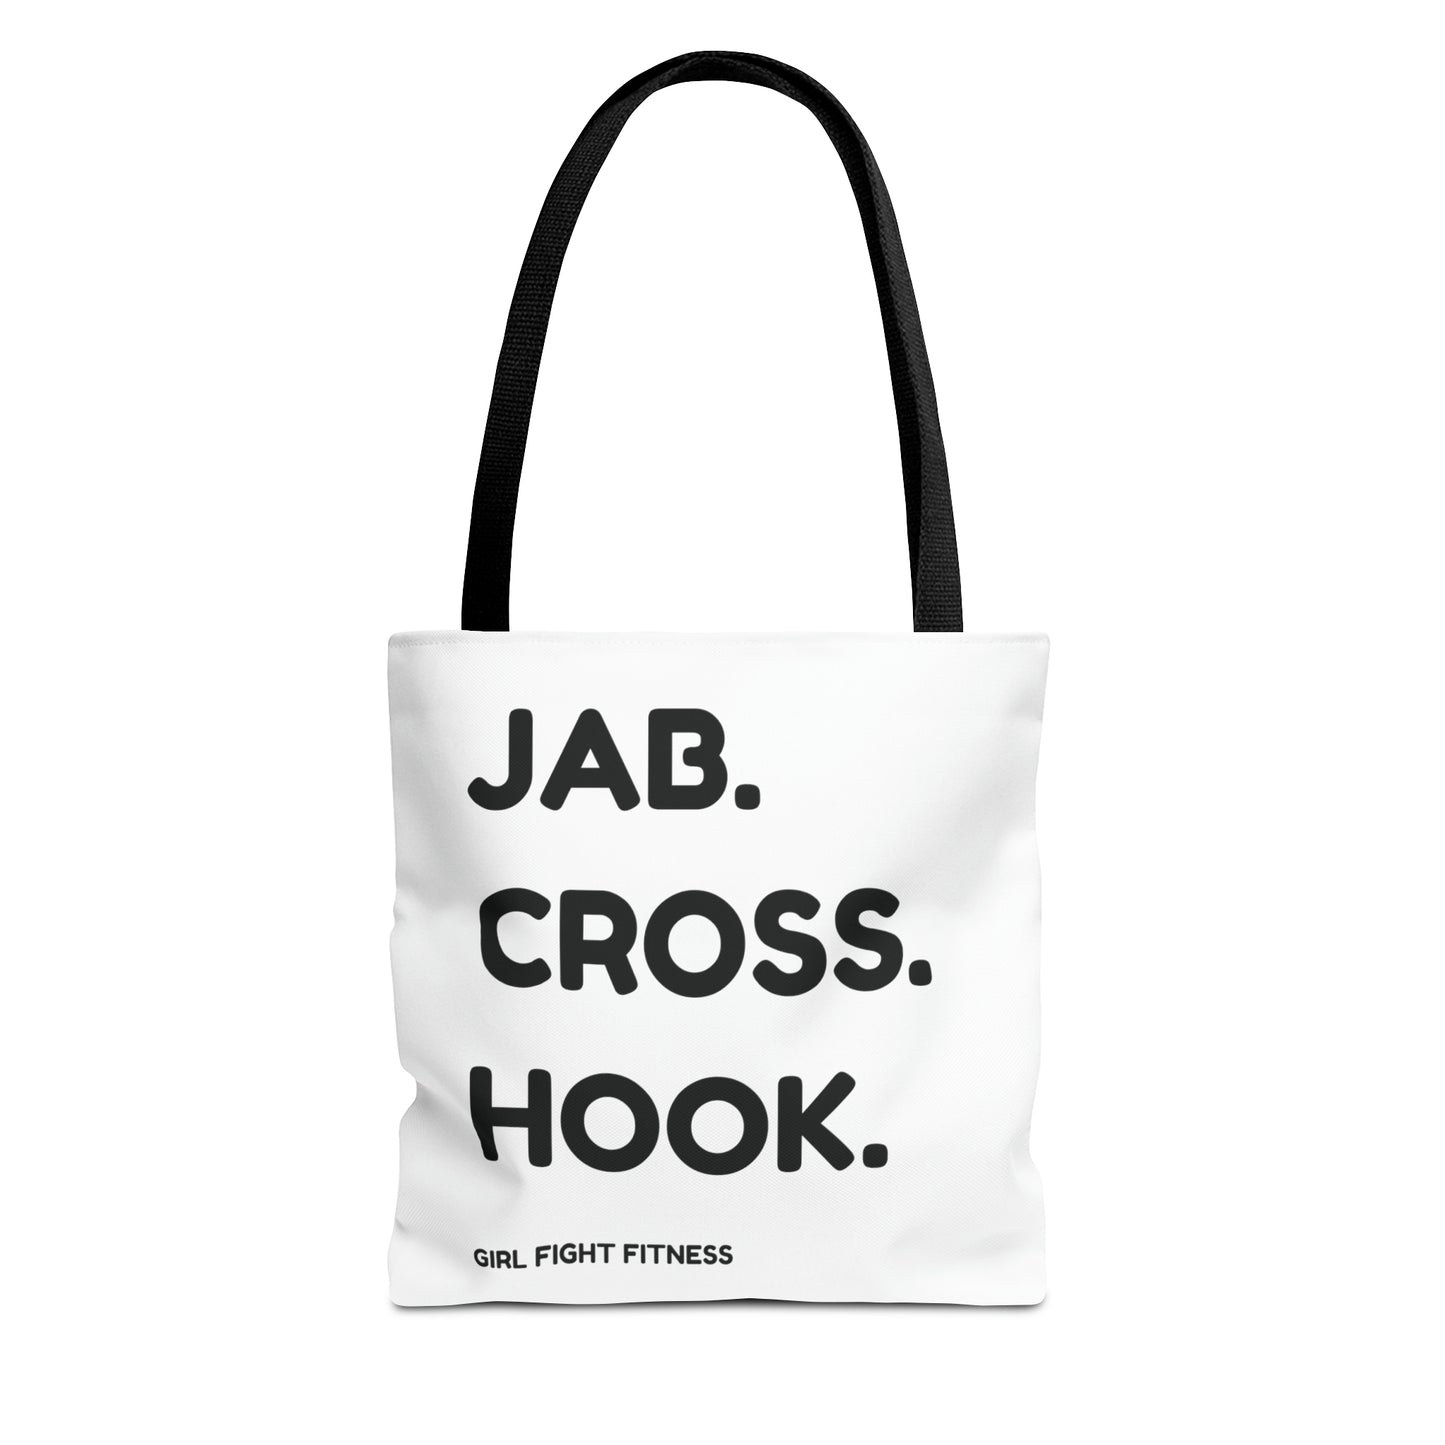 Jab. Cross. Hook. Tote Bag